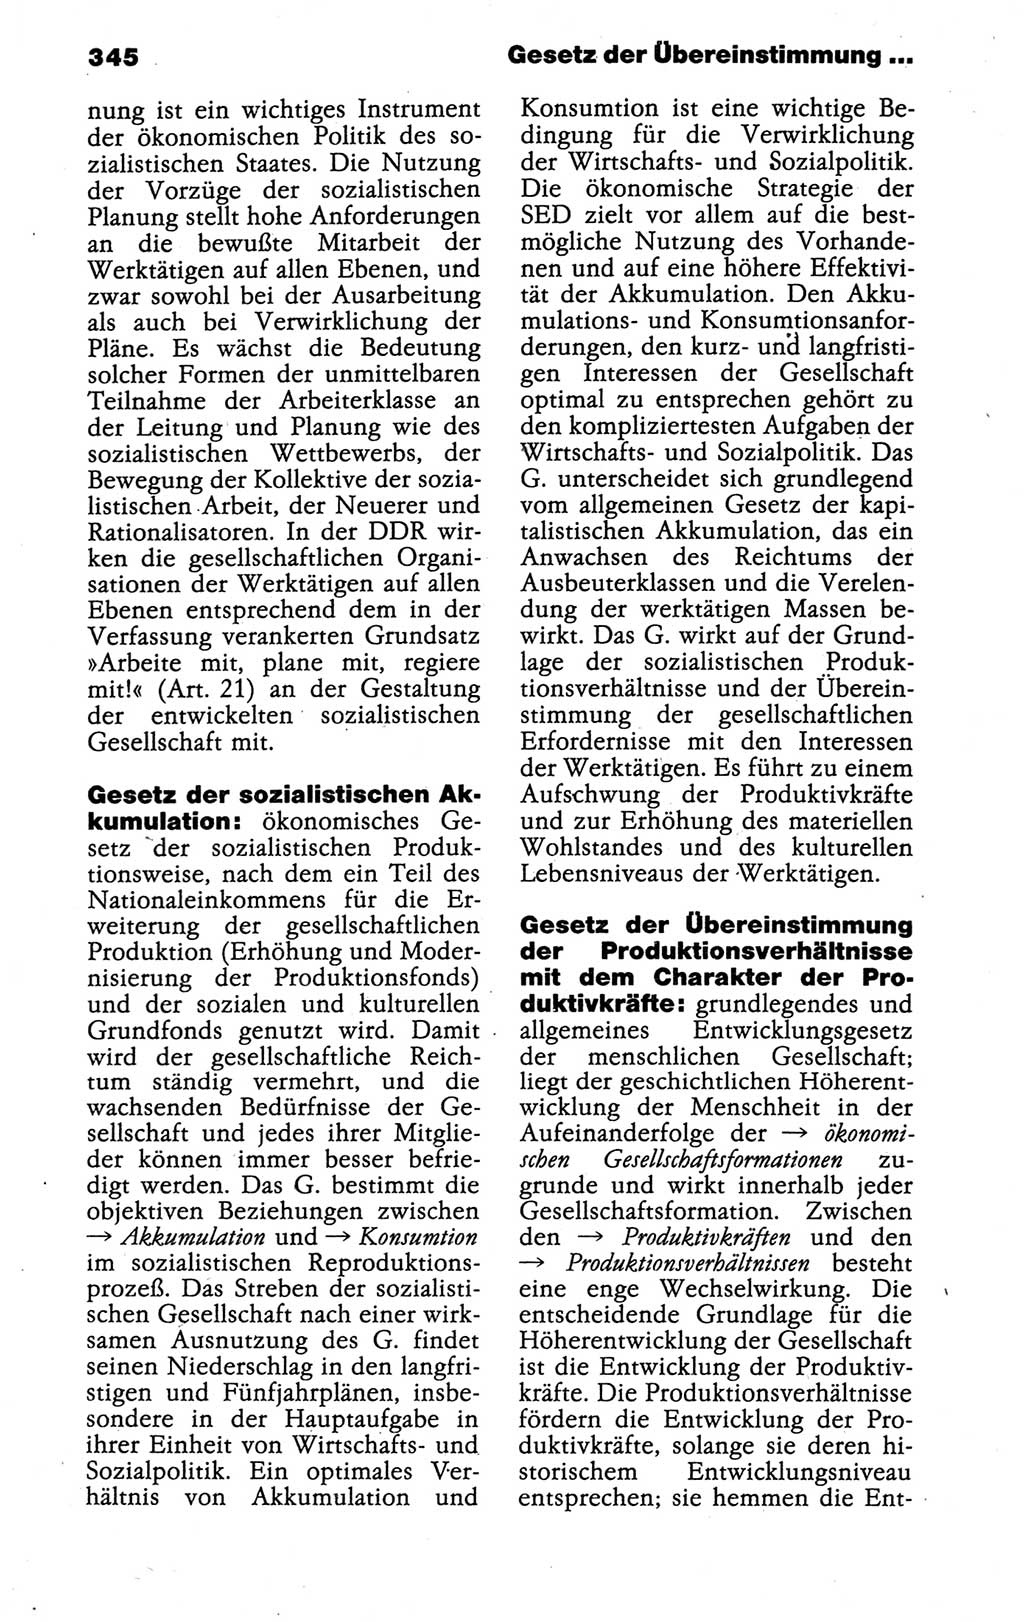 Kleines politisches Wörterbuch [Deutsche Demokratische Republik (DDR)] 1988, Seite 345 (Kl. pol. Wb. DDR 1988, S. 345)